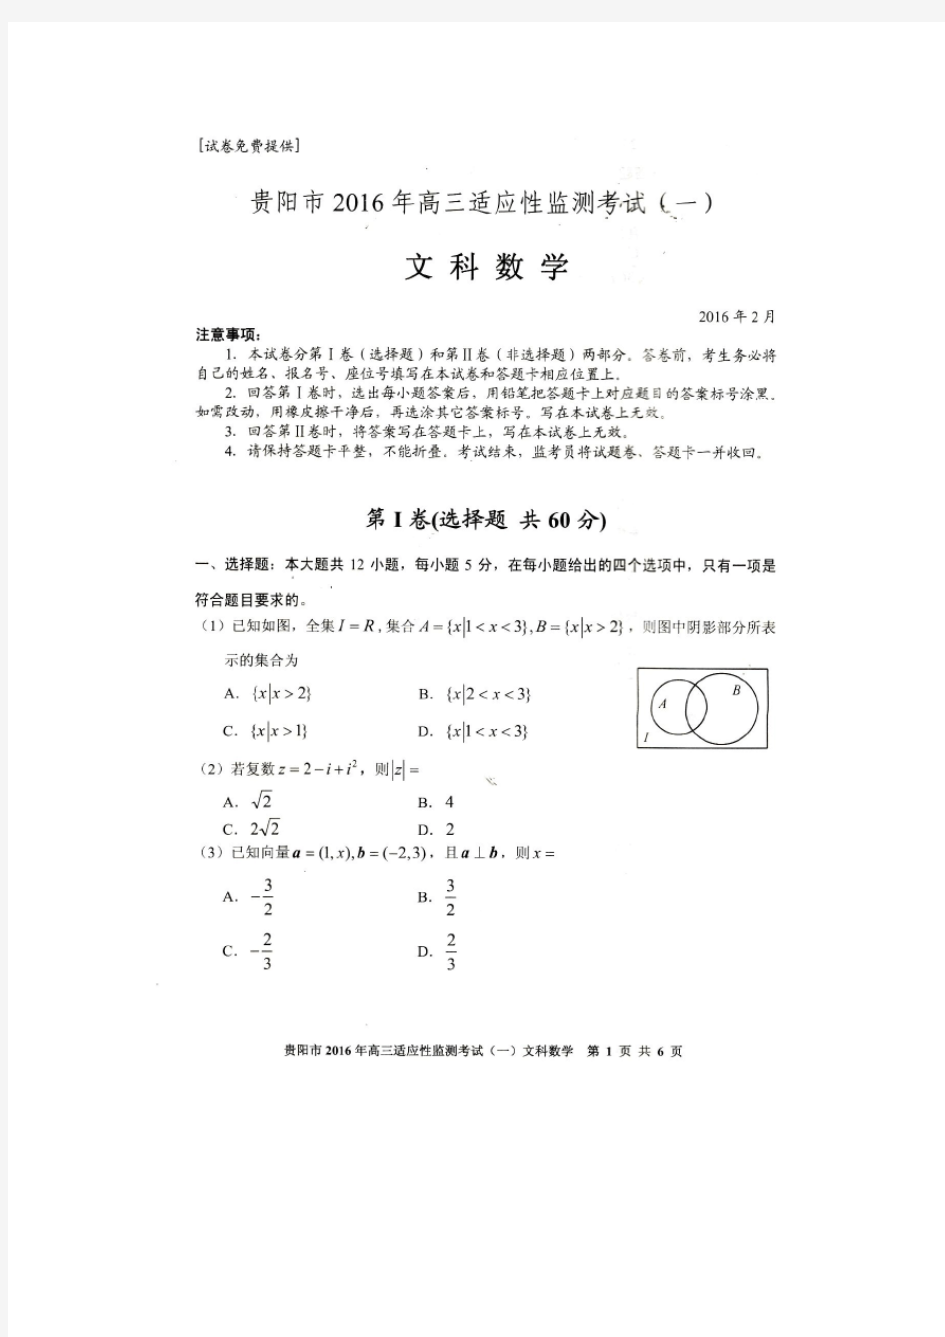 贵阳市2016年高三适应性检测考试(一)文科数学